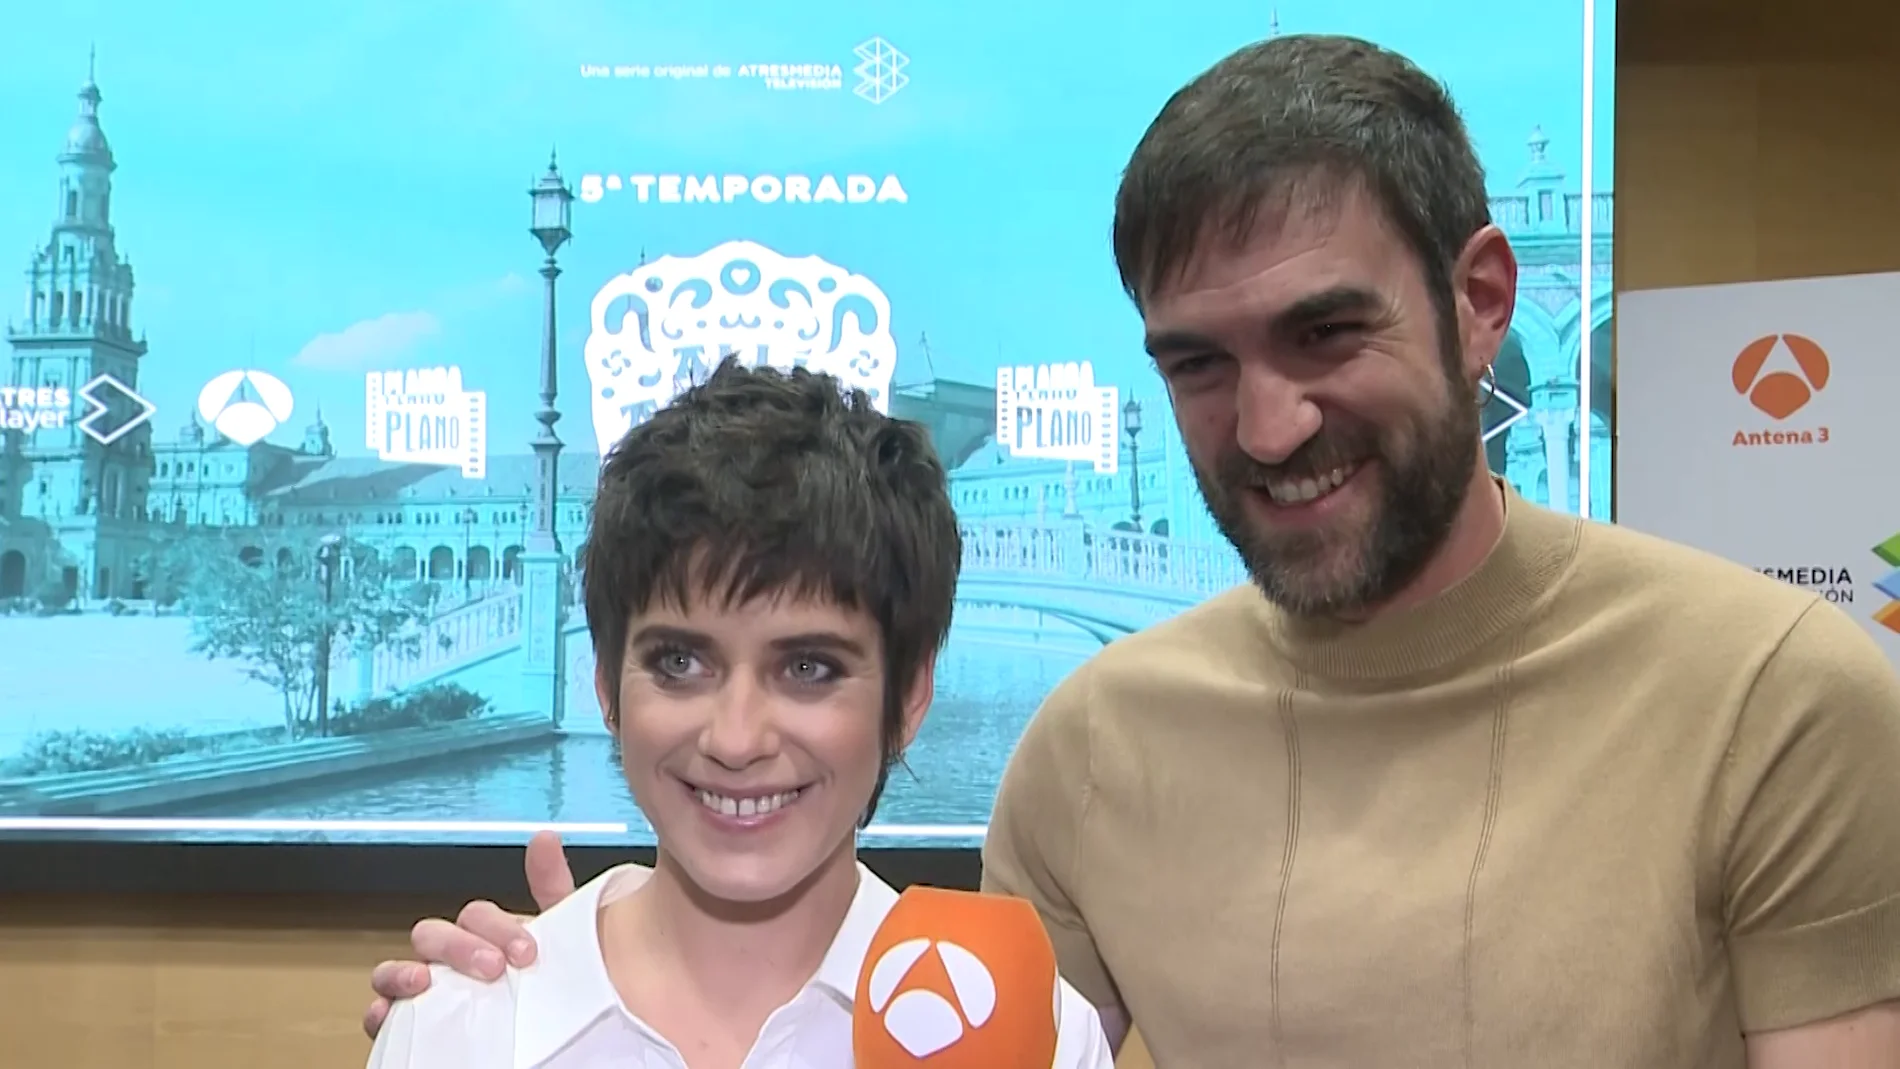 María León y Jon Plazaola: "Os vais a volver locos con nuestro amor esta temporada" 